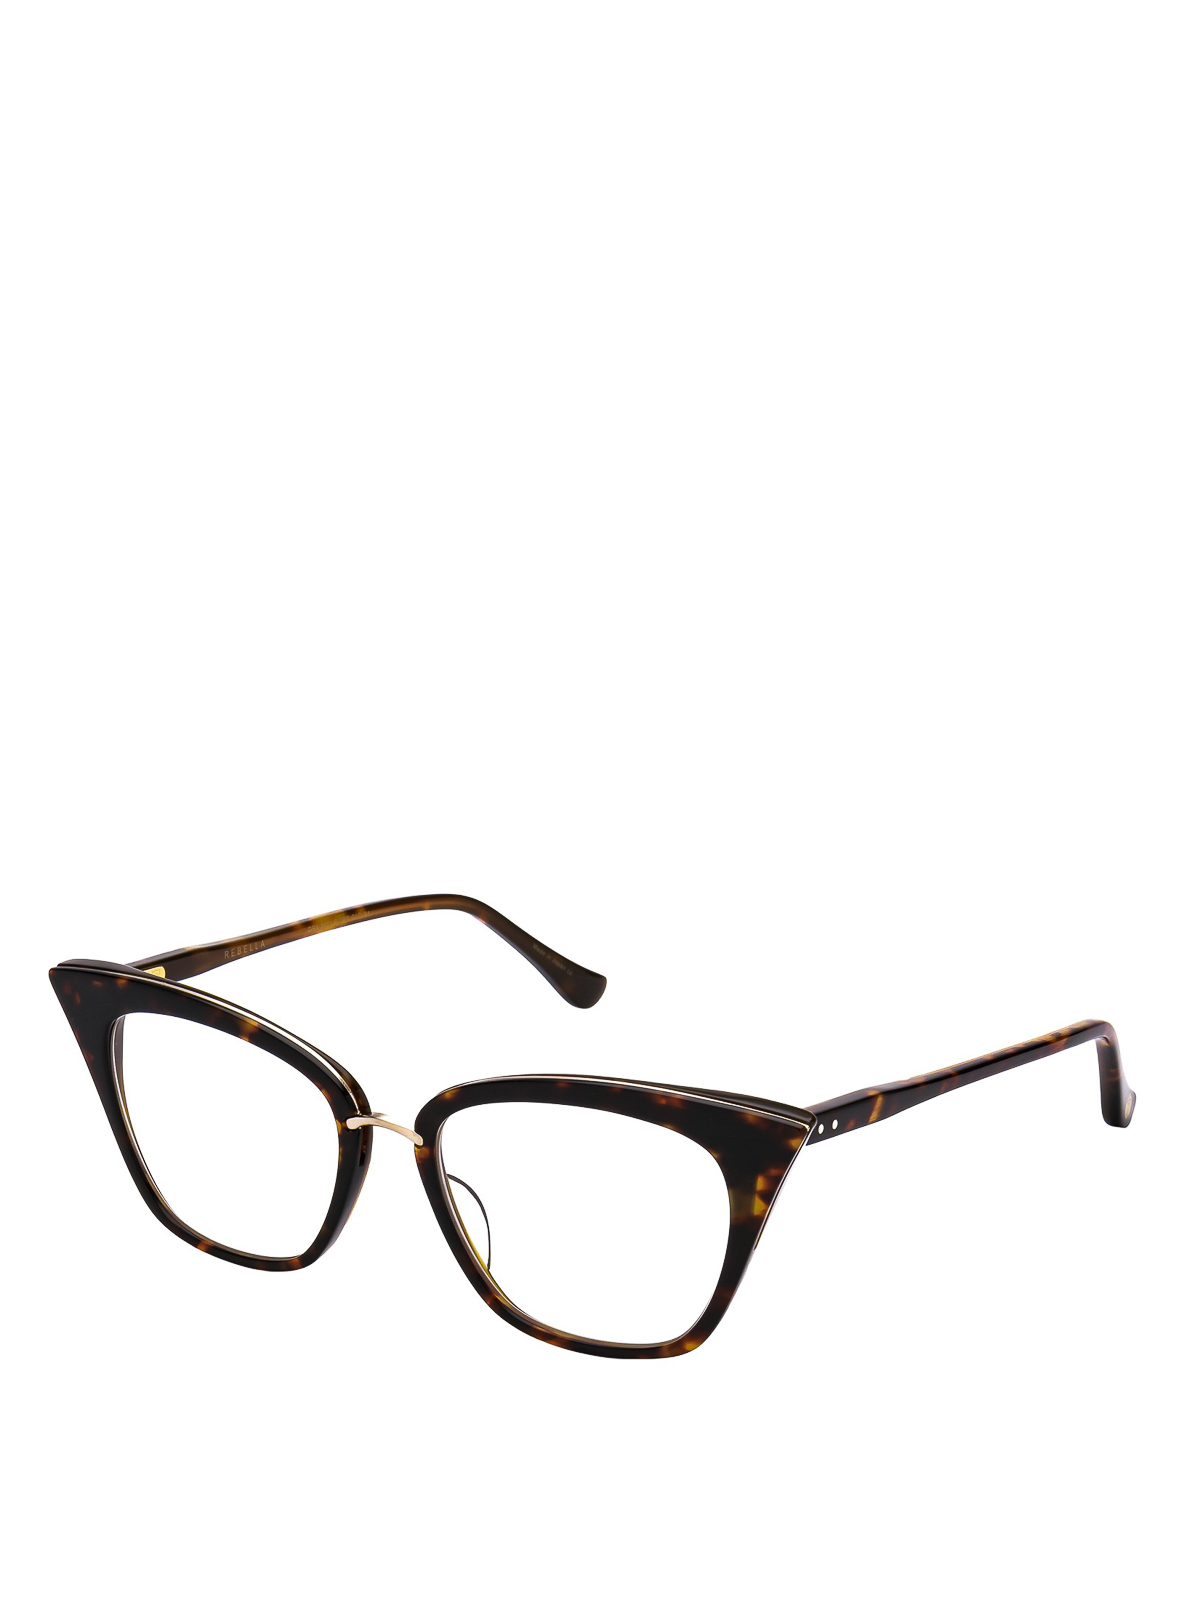 Glasses Dita Tortoise Cat Eye Style Eyeglasses Drx3031btrtgld51